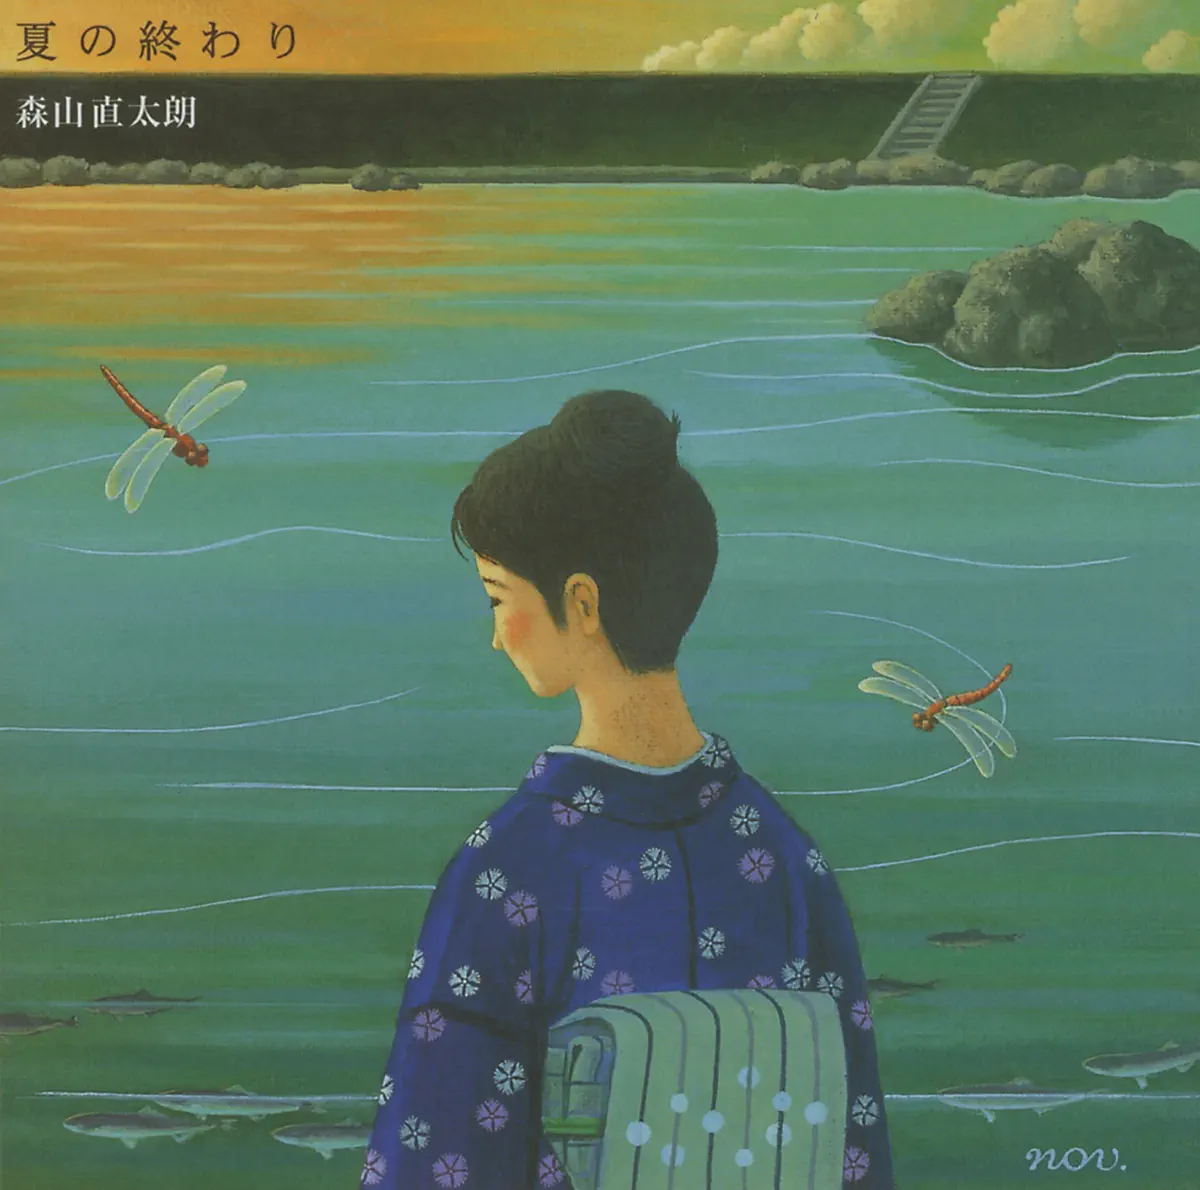 森山直太朗 - 夏の終わり - Single (2013) [iTunes Plus AAC M4A]-新房子